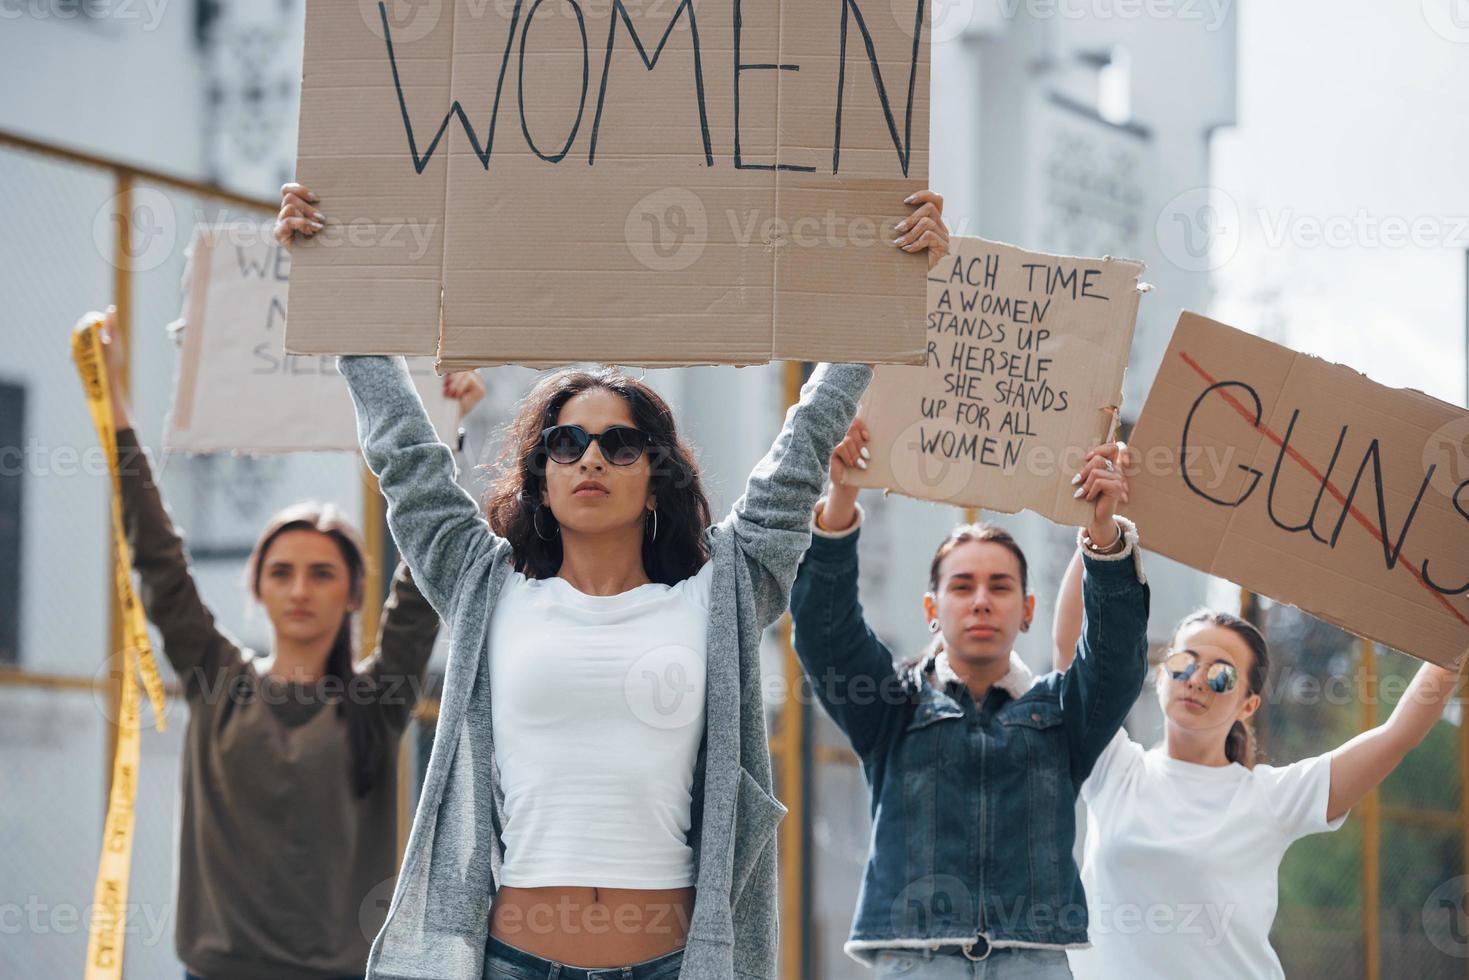 camminando in avanti. gruppo di donne femministe protestano per i loro diritti all'aperto foto